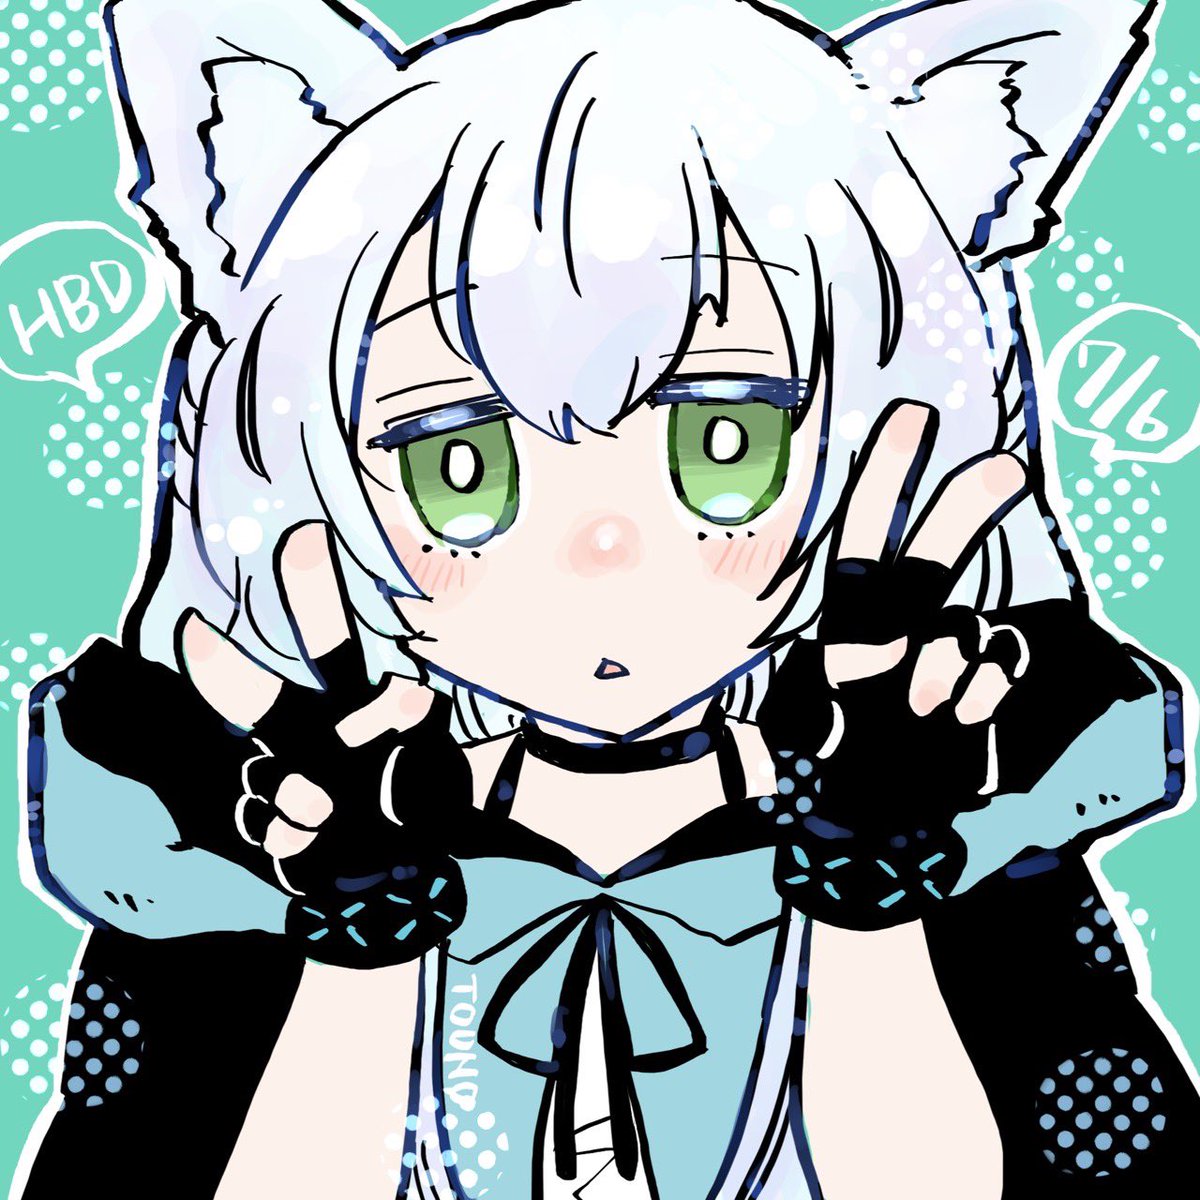 rosmontis (arknights) 1girl animal ears solo gloves green eyes cat ears fingerless gloves  illustration images